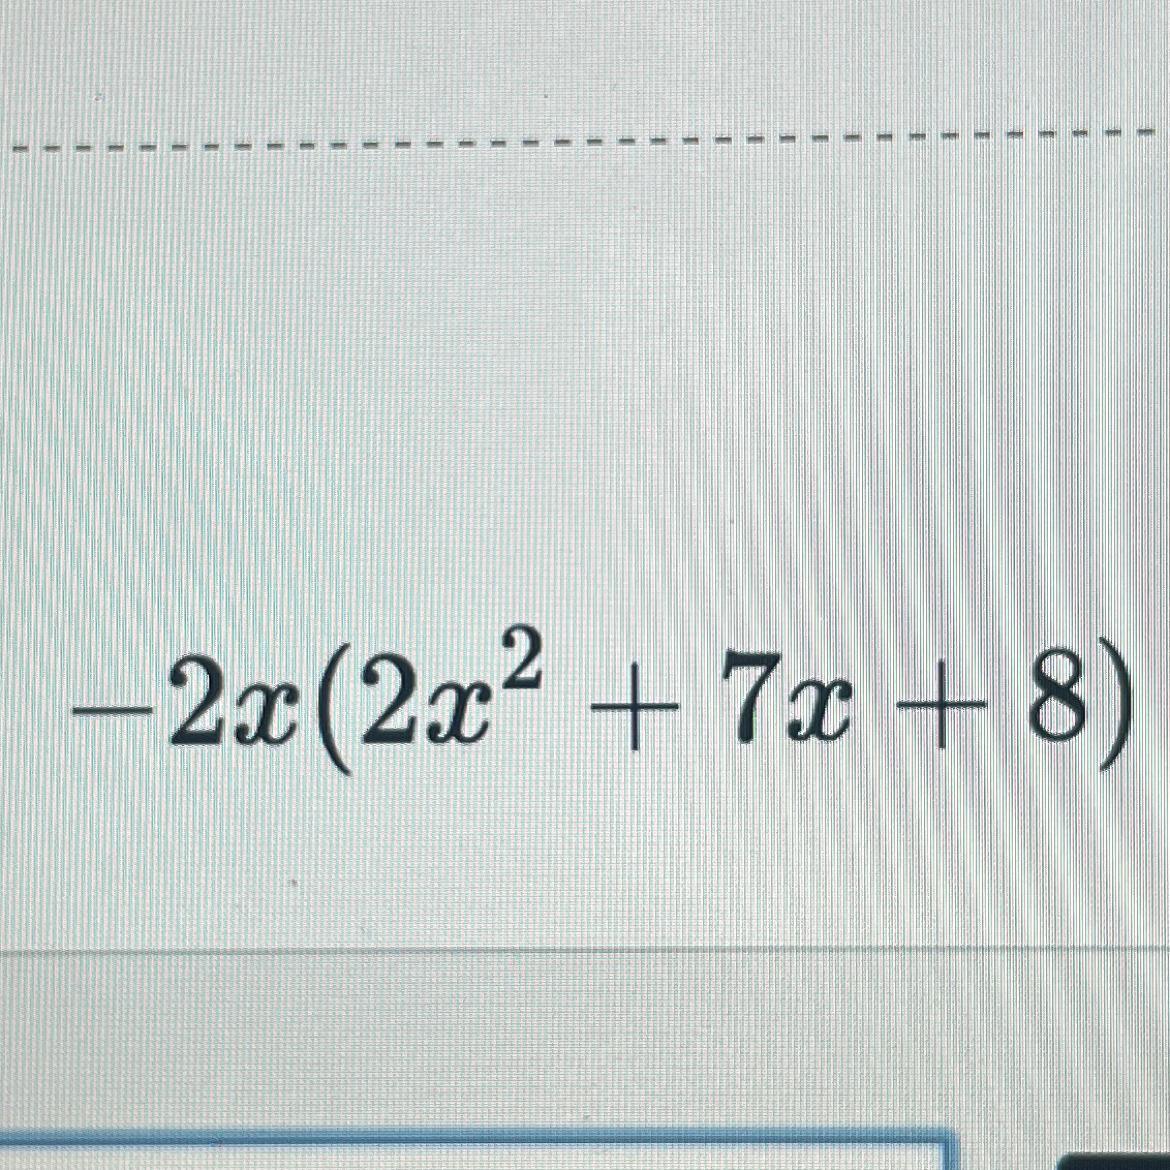 -2x(2x^2+7x+8)...................